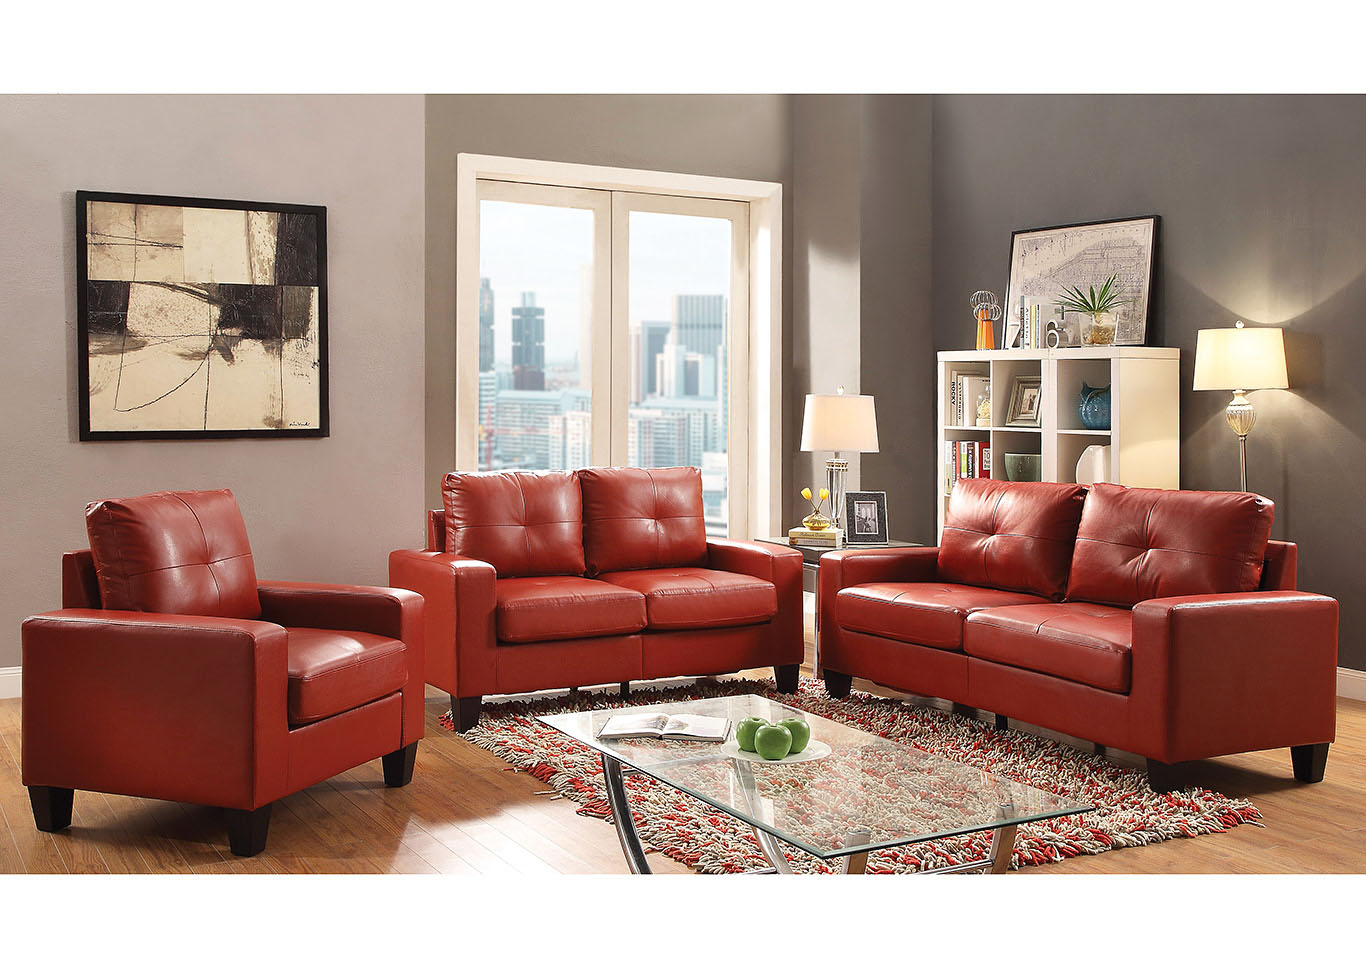 Red Newbury Modular Sofa and Loveseat,Glory Furniture